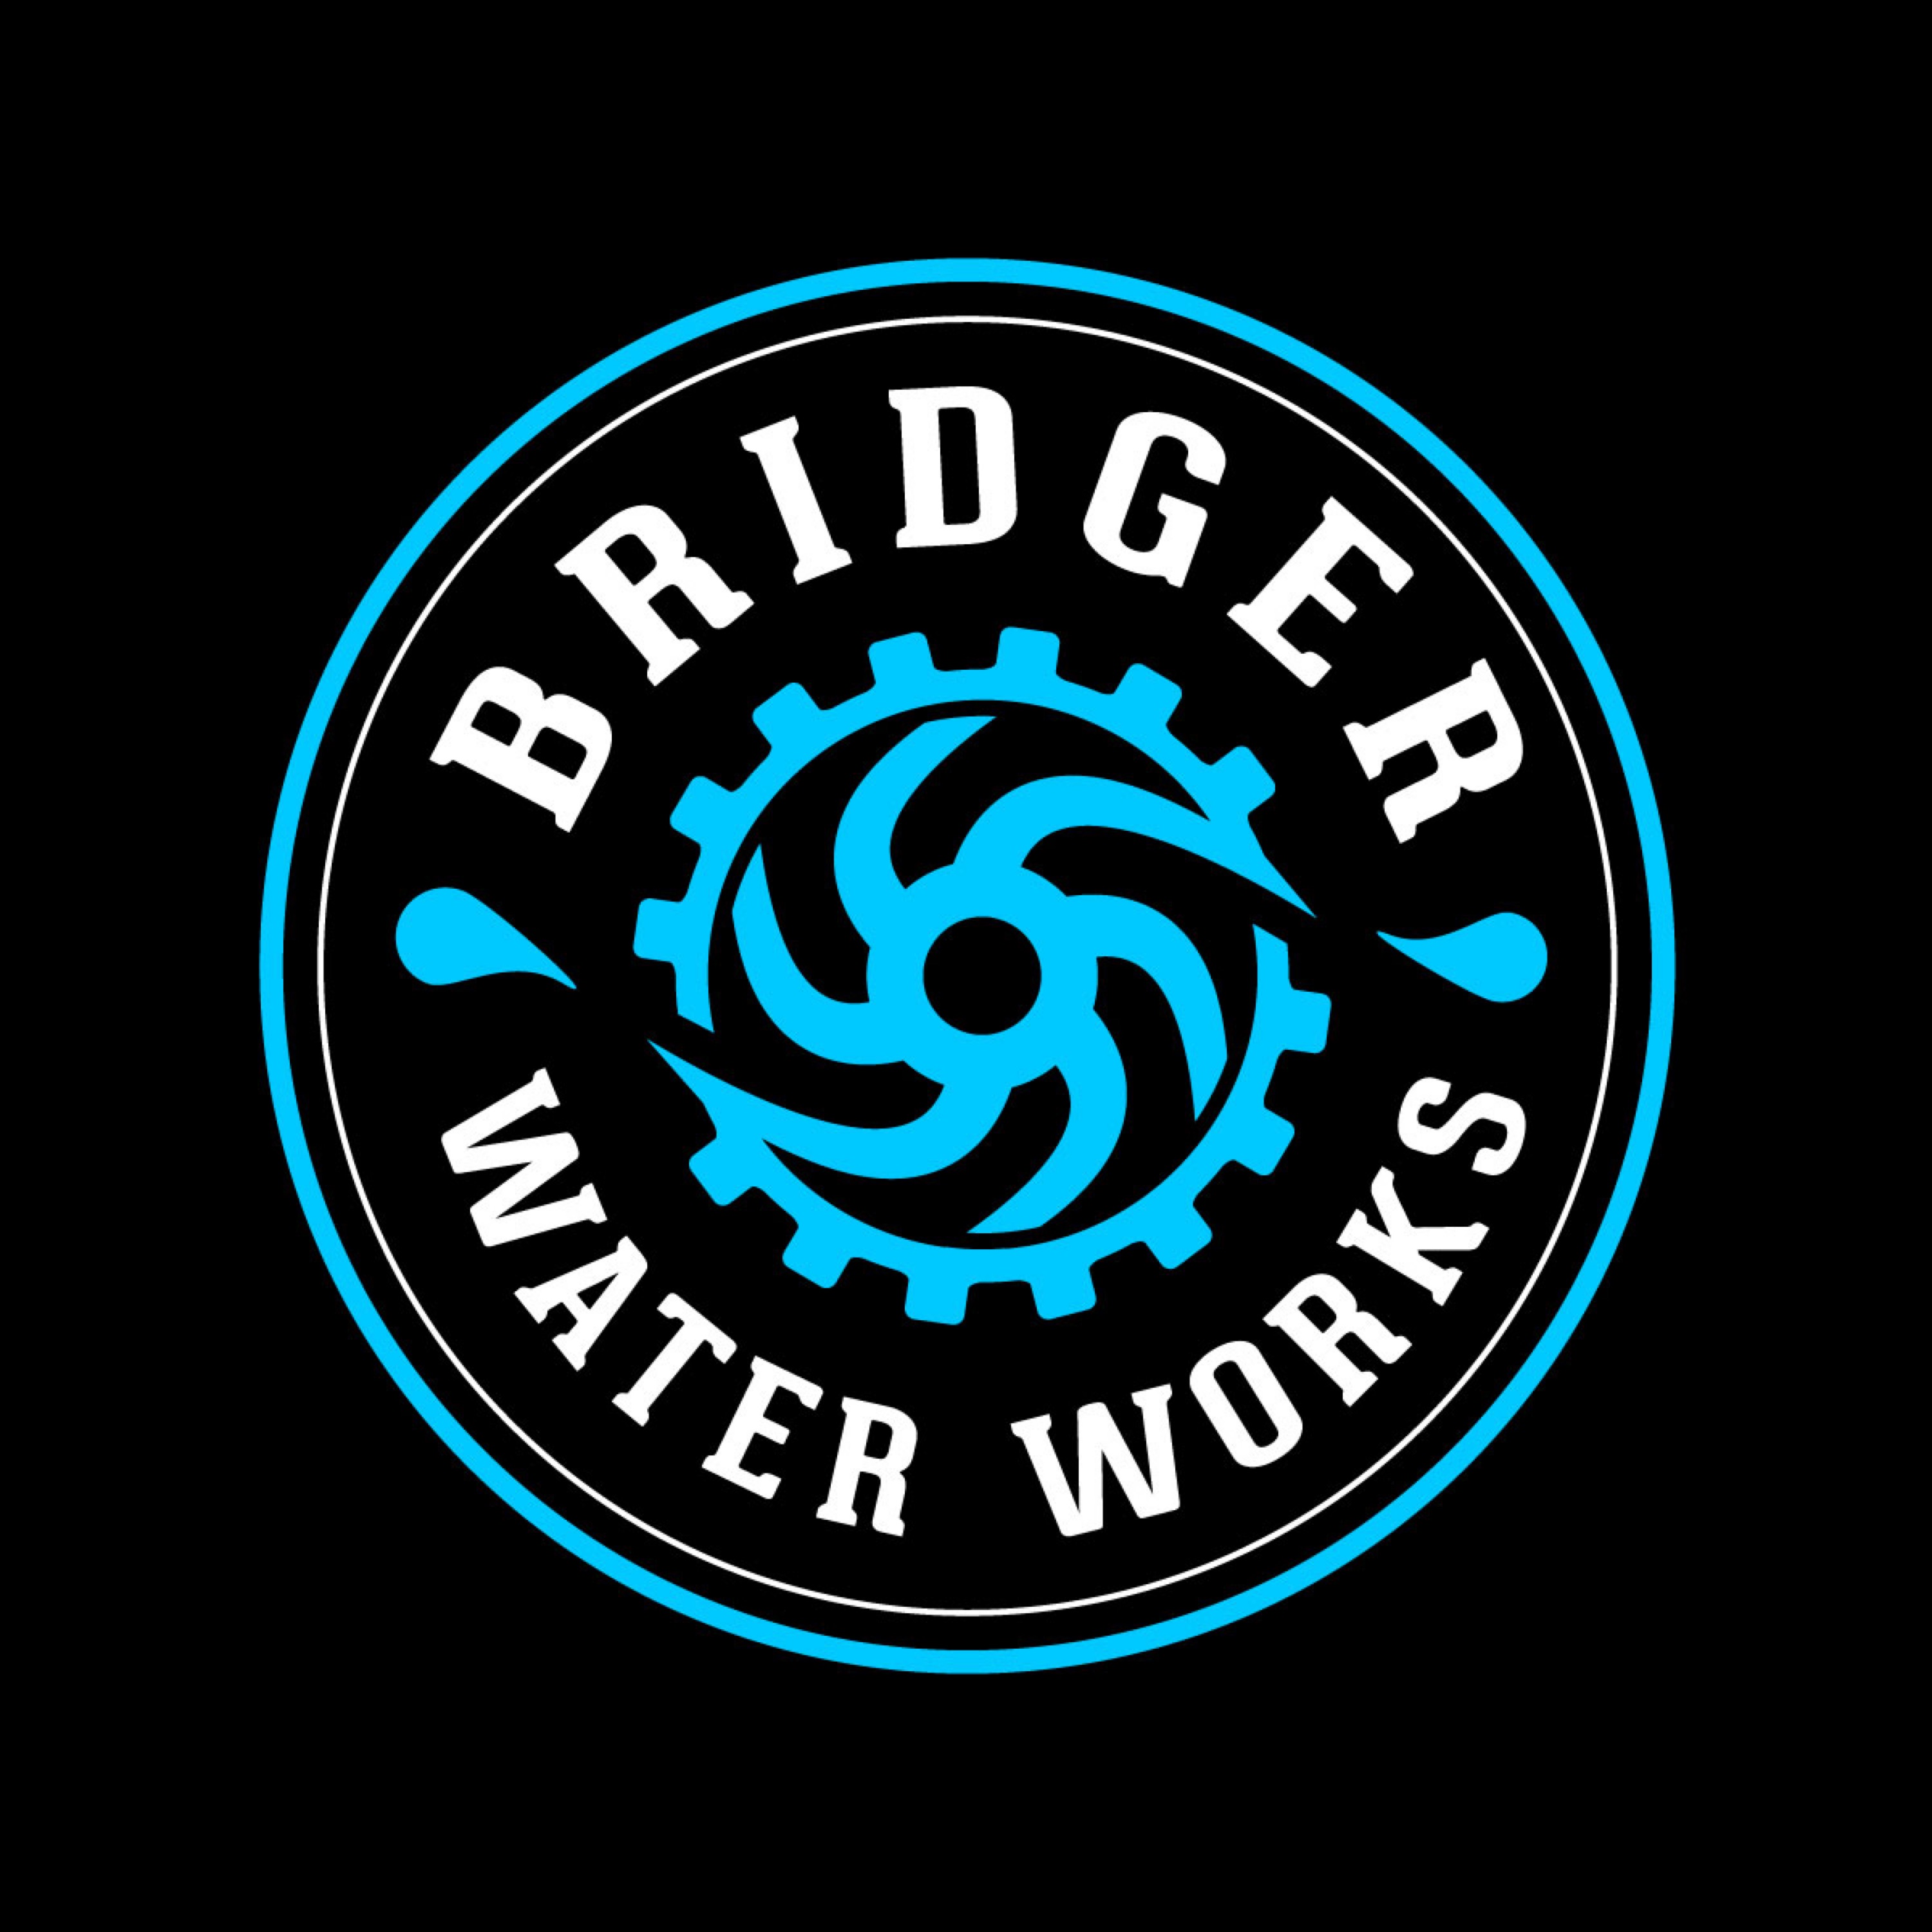 Bridger Water Works Logo